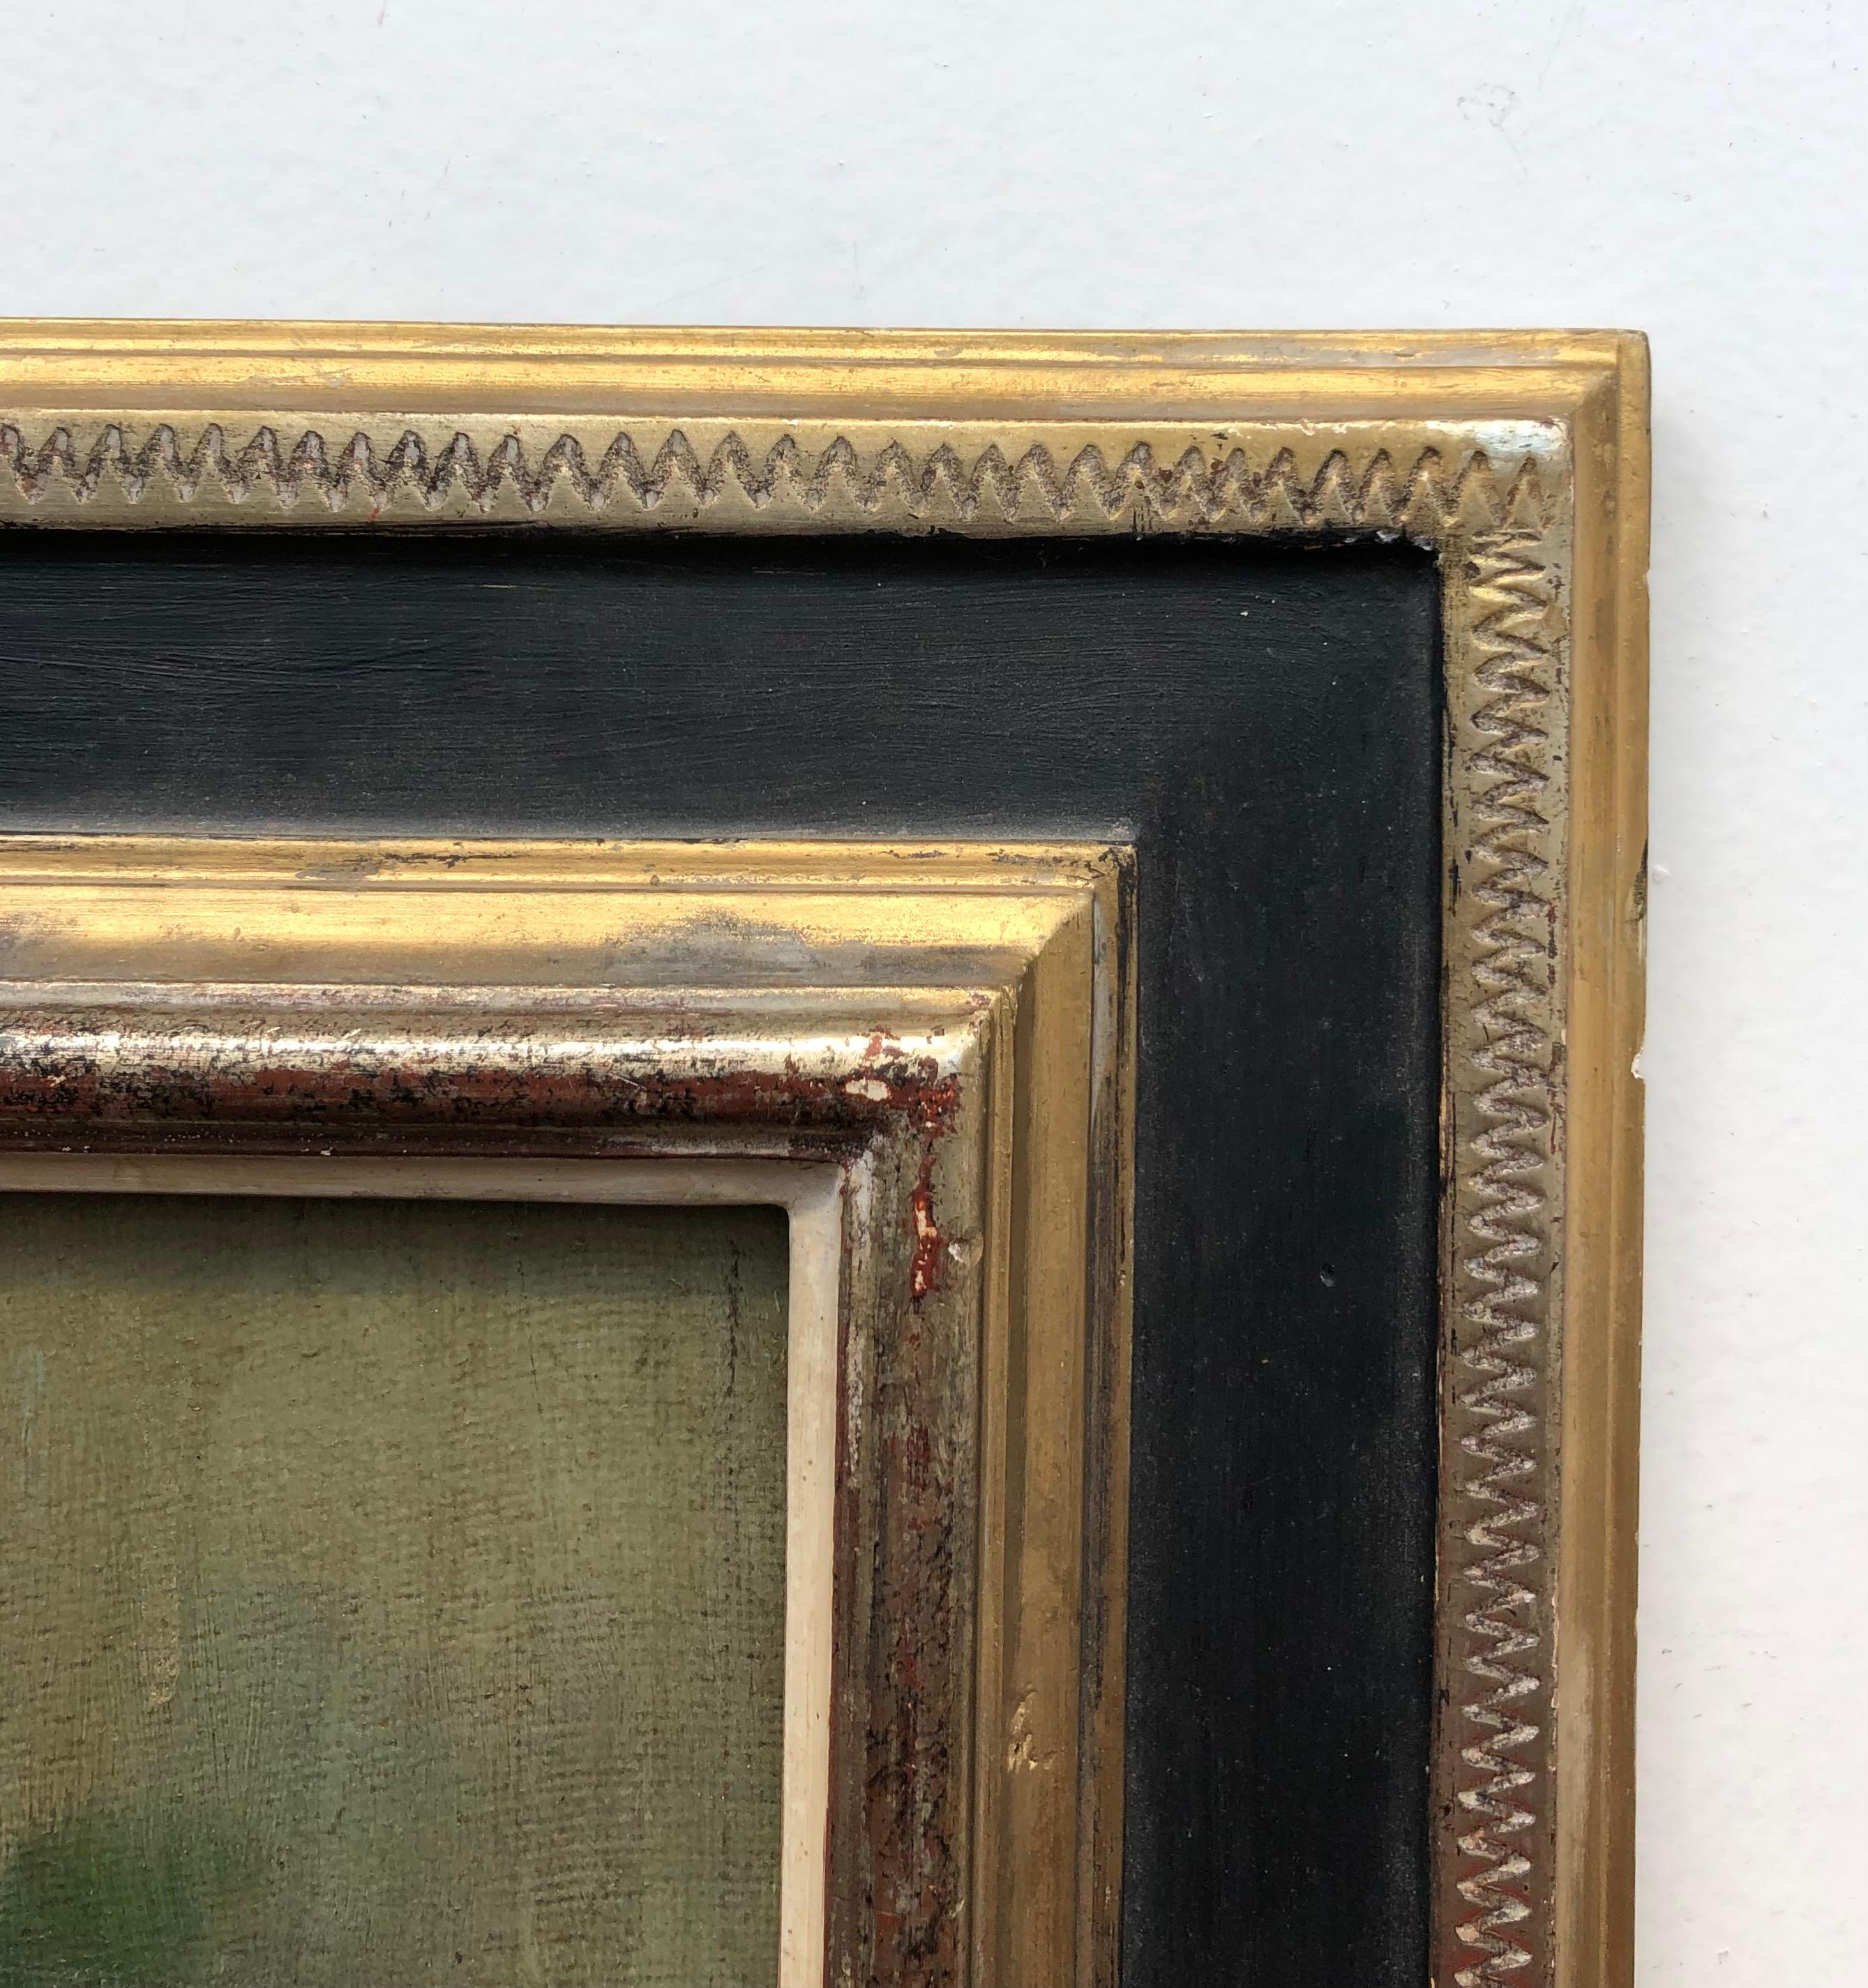 Work on canvas
Golden wooden frame
55 x 45.5 x 4 cm